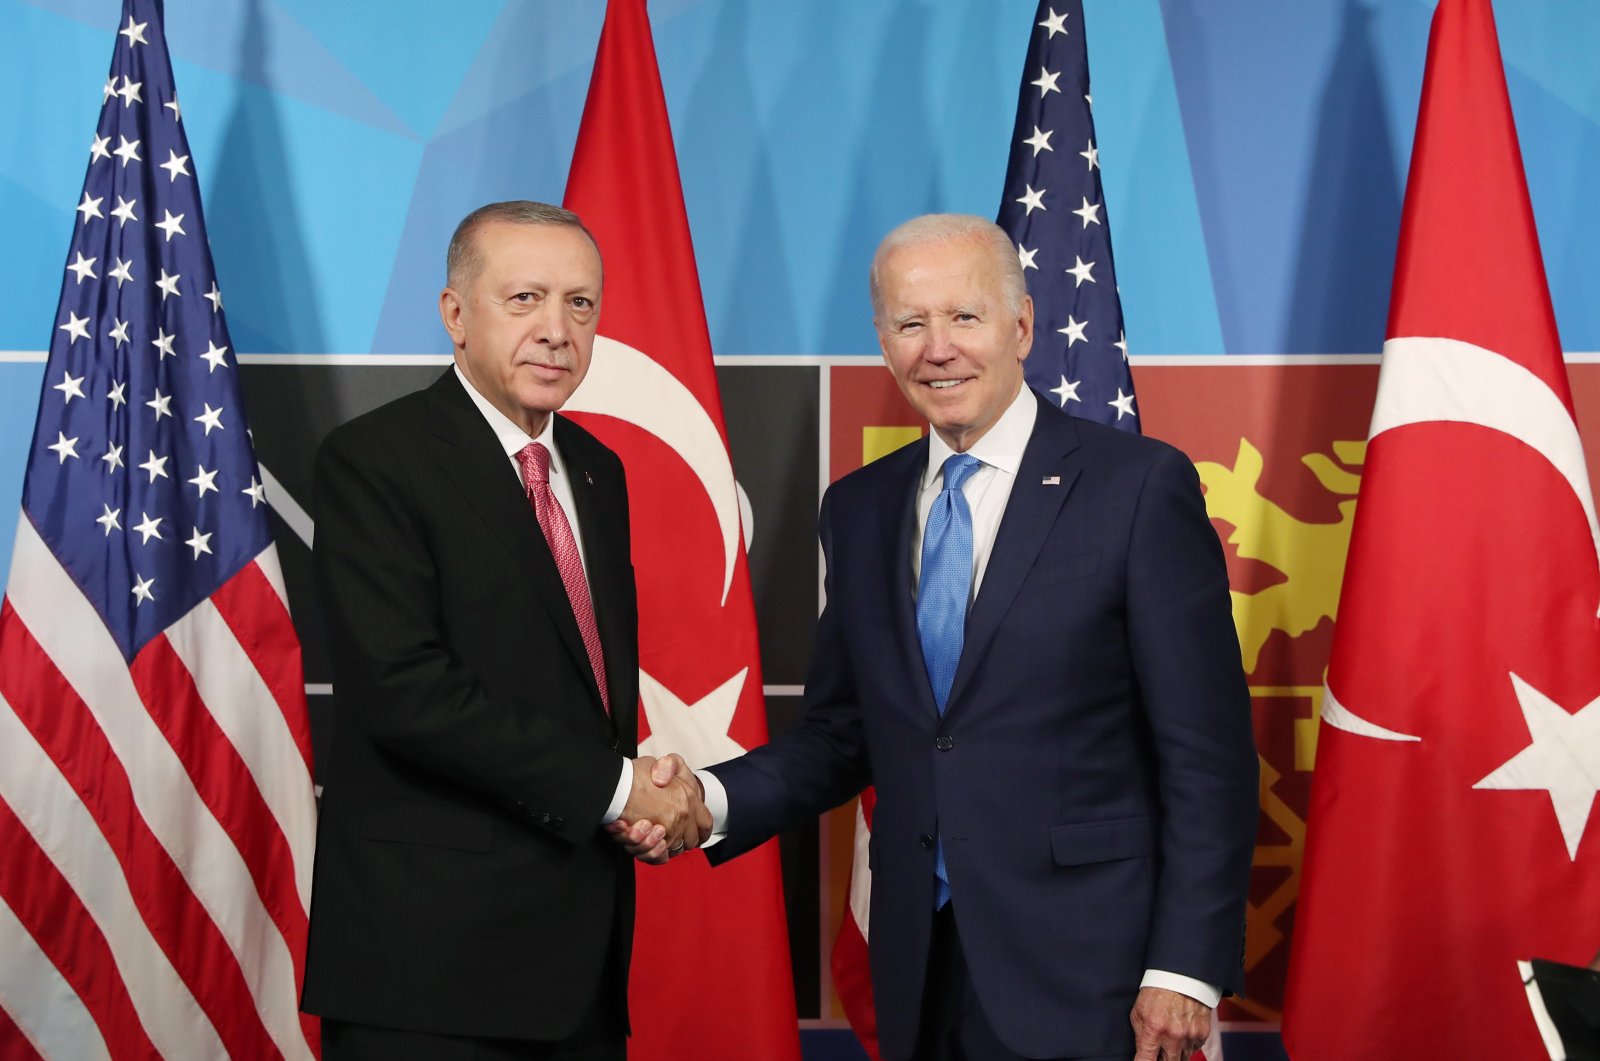 President Recep Tayyip Erdoğan and U.S. President Joe Biden shake hands at their meeting held on the sidelines of the NATO Summit in Madrid, Spain, June 29, 2022. (DHA Photo)